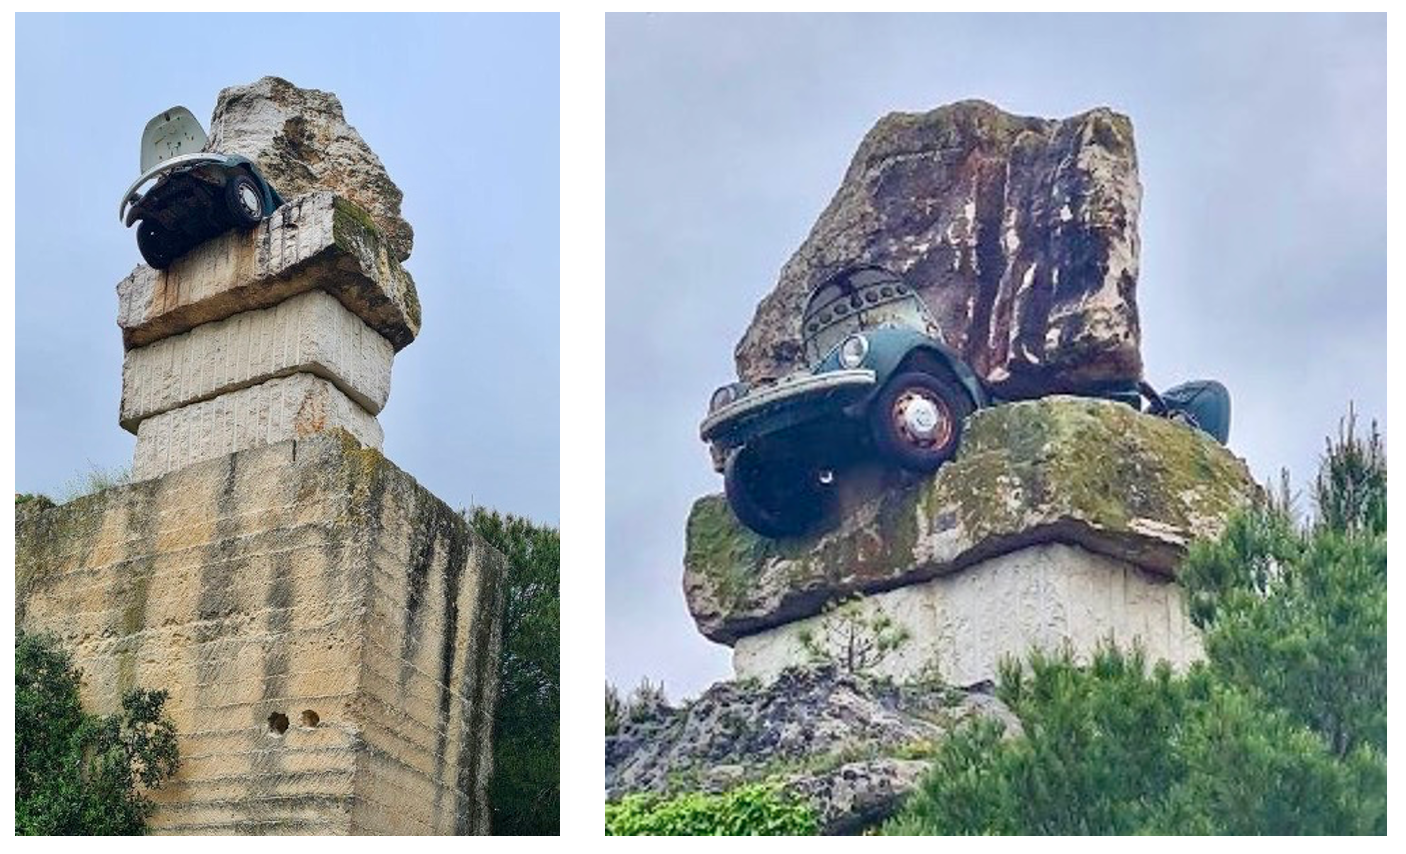 Himmelhoch und abgrundtief – Paradisos Skulpturenpark in Matera, Mausoleum des Ikarus, Zwischen riesigen Steinen ist ein VW Käfer zerquetscht